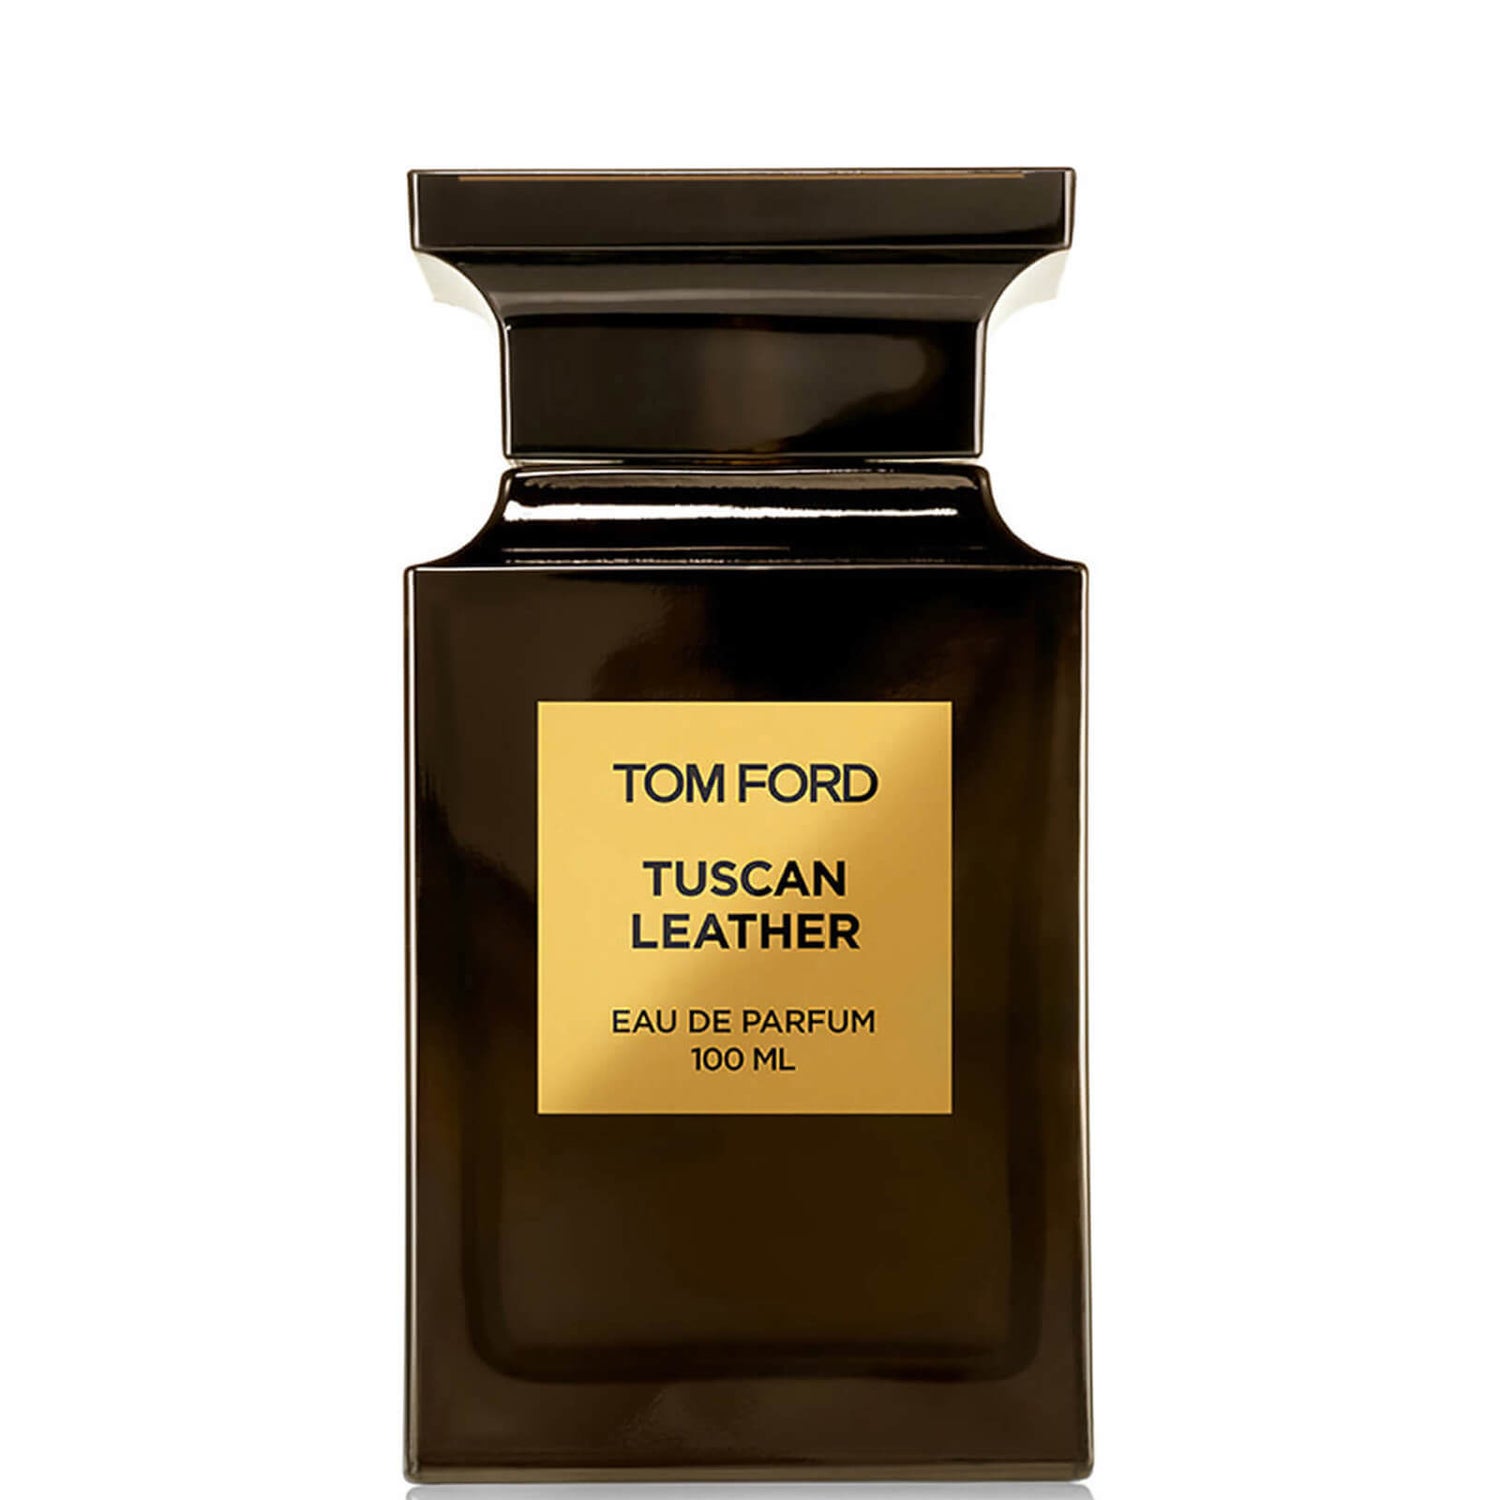 Tom Ford Tuscan Leather Eau de Parfum Spray - 100 ml